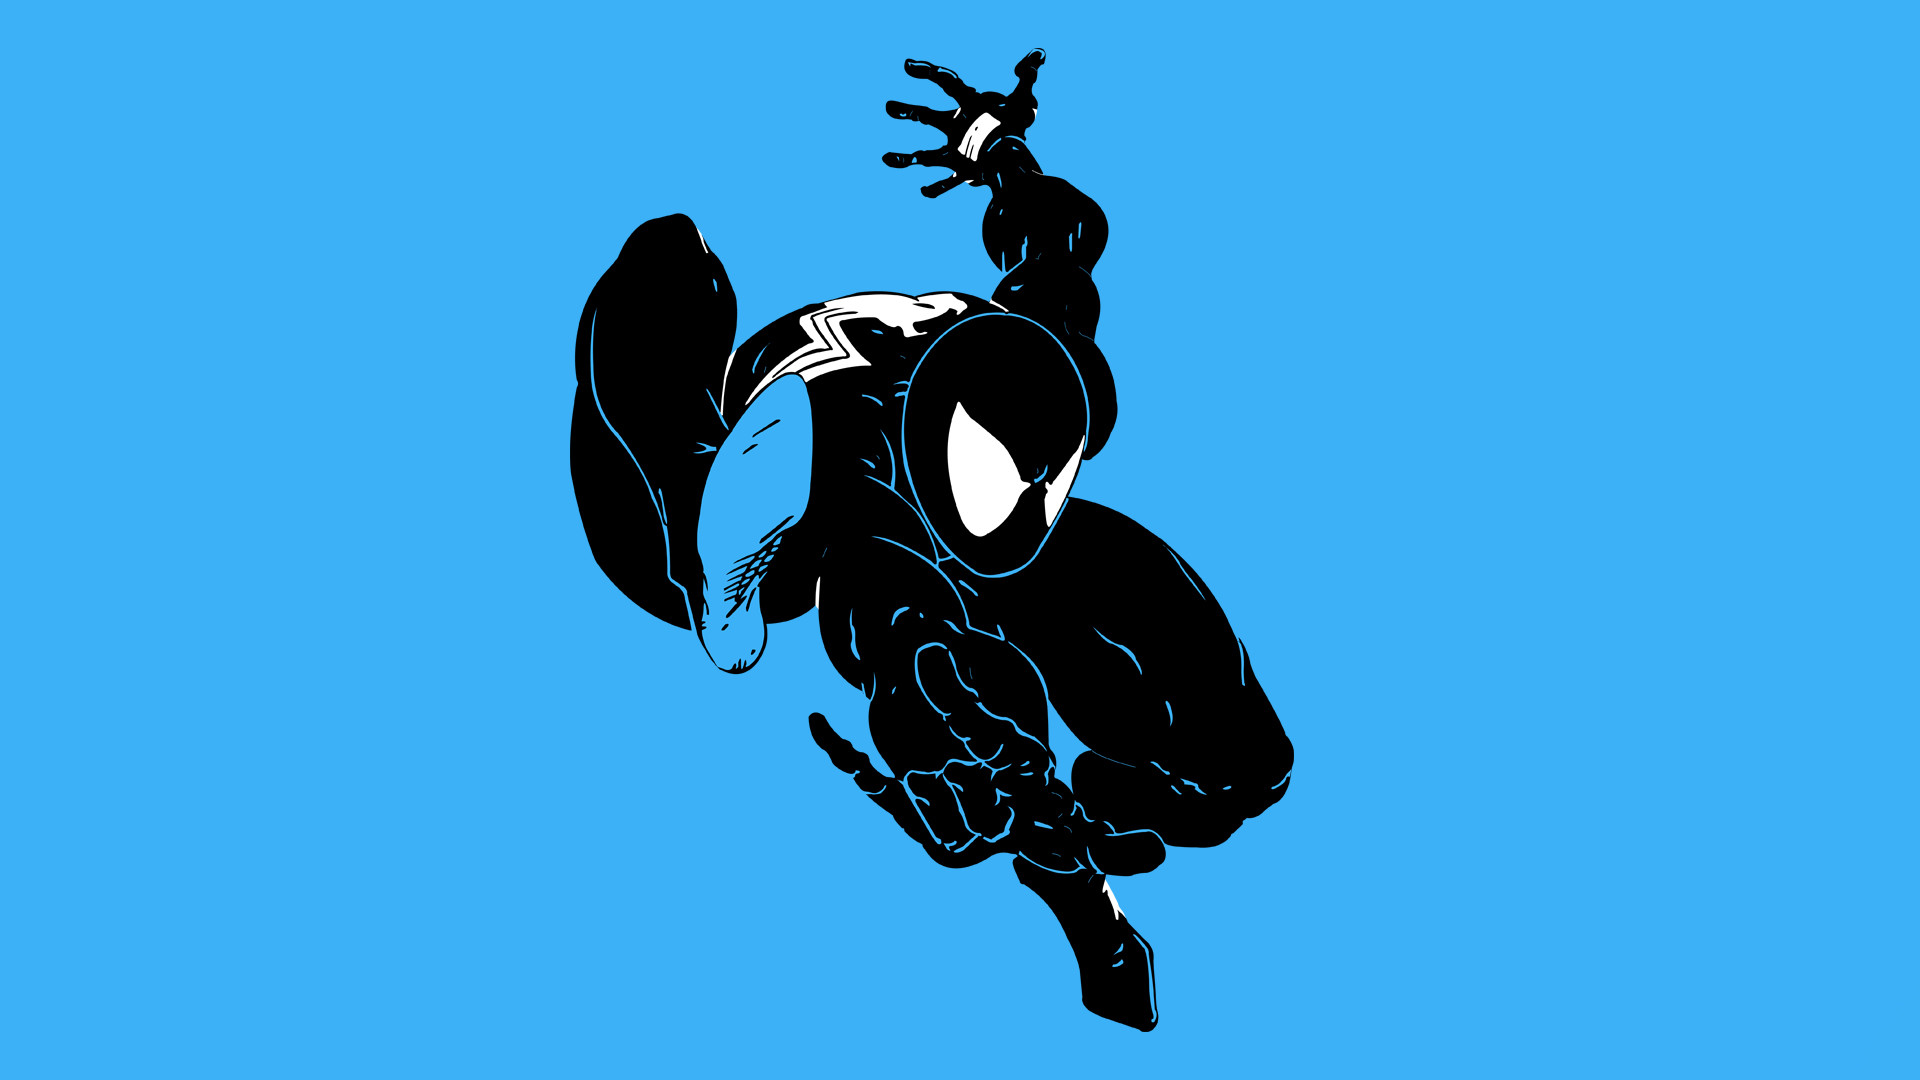 1920x1080 ... Symbiote Spider-Man Wallpaper by ferncaz95